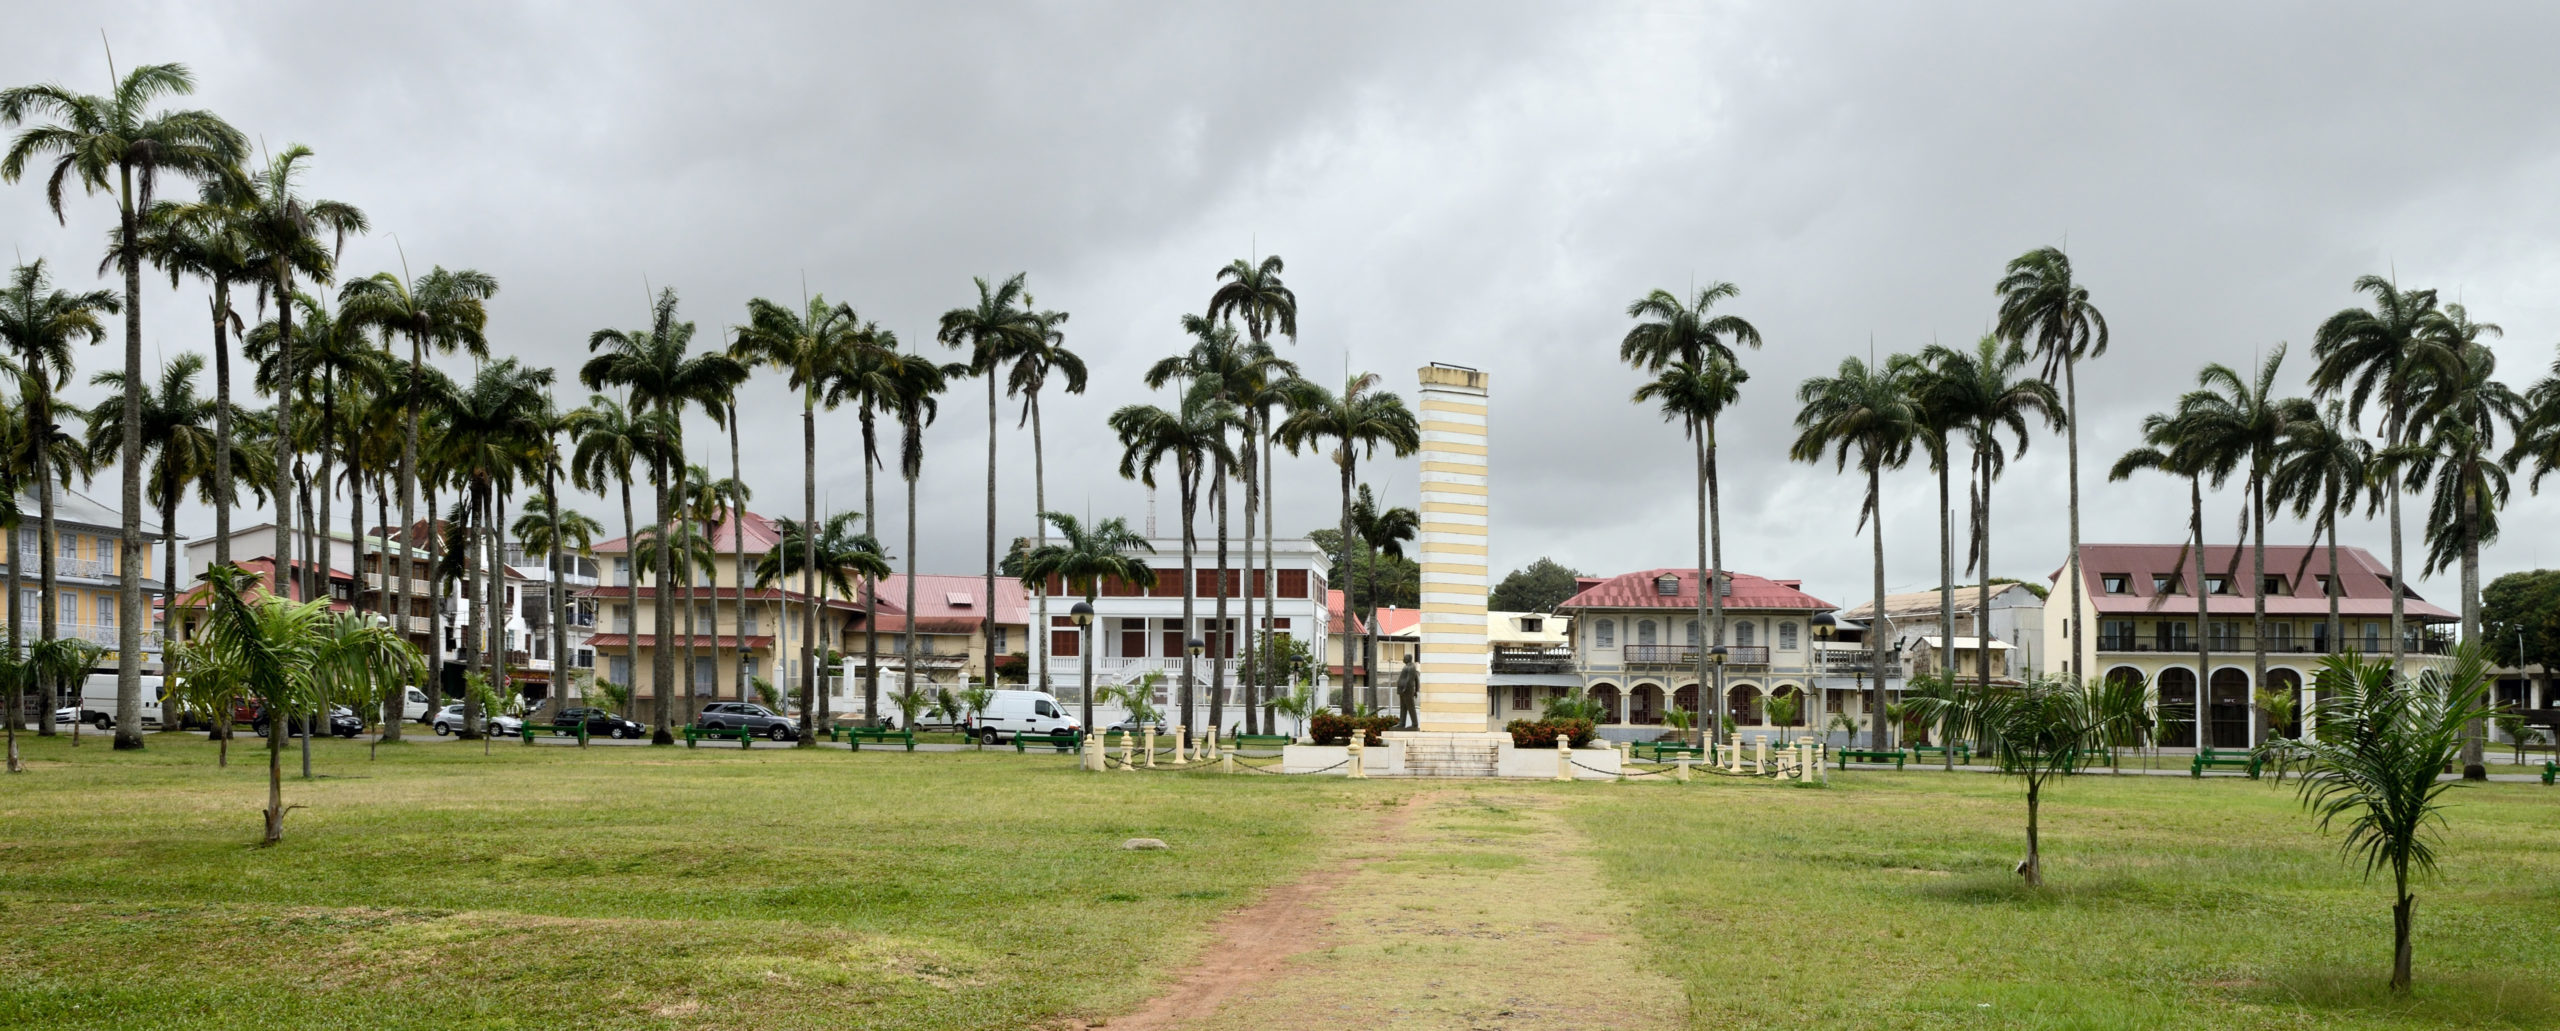 place des palmistes - Cayenne